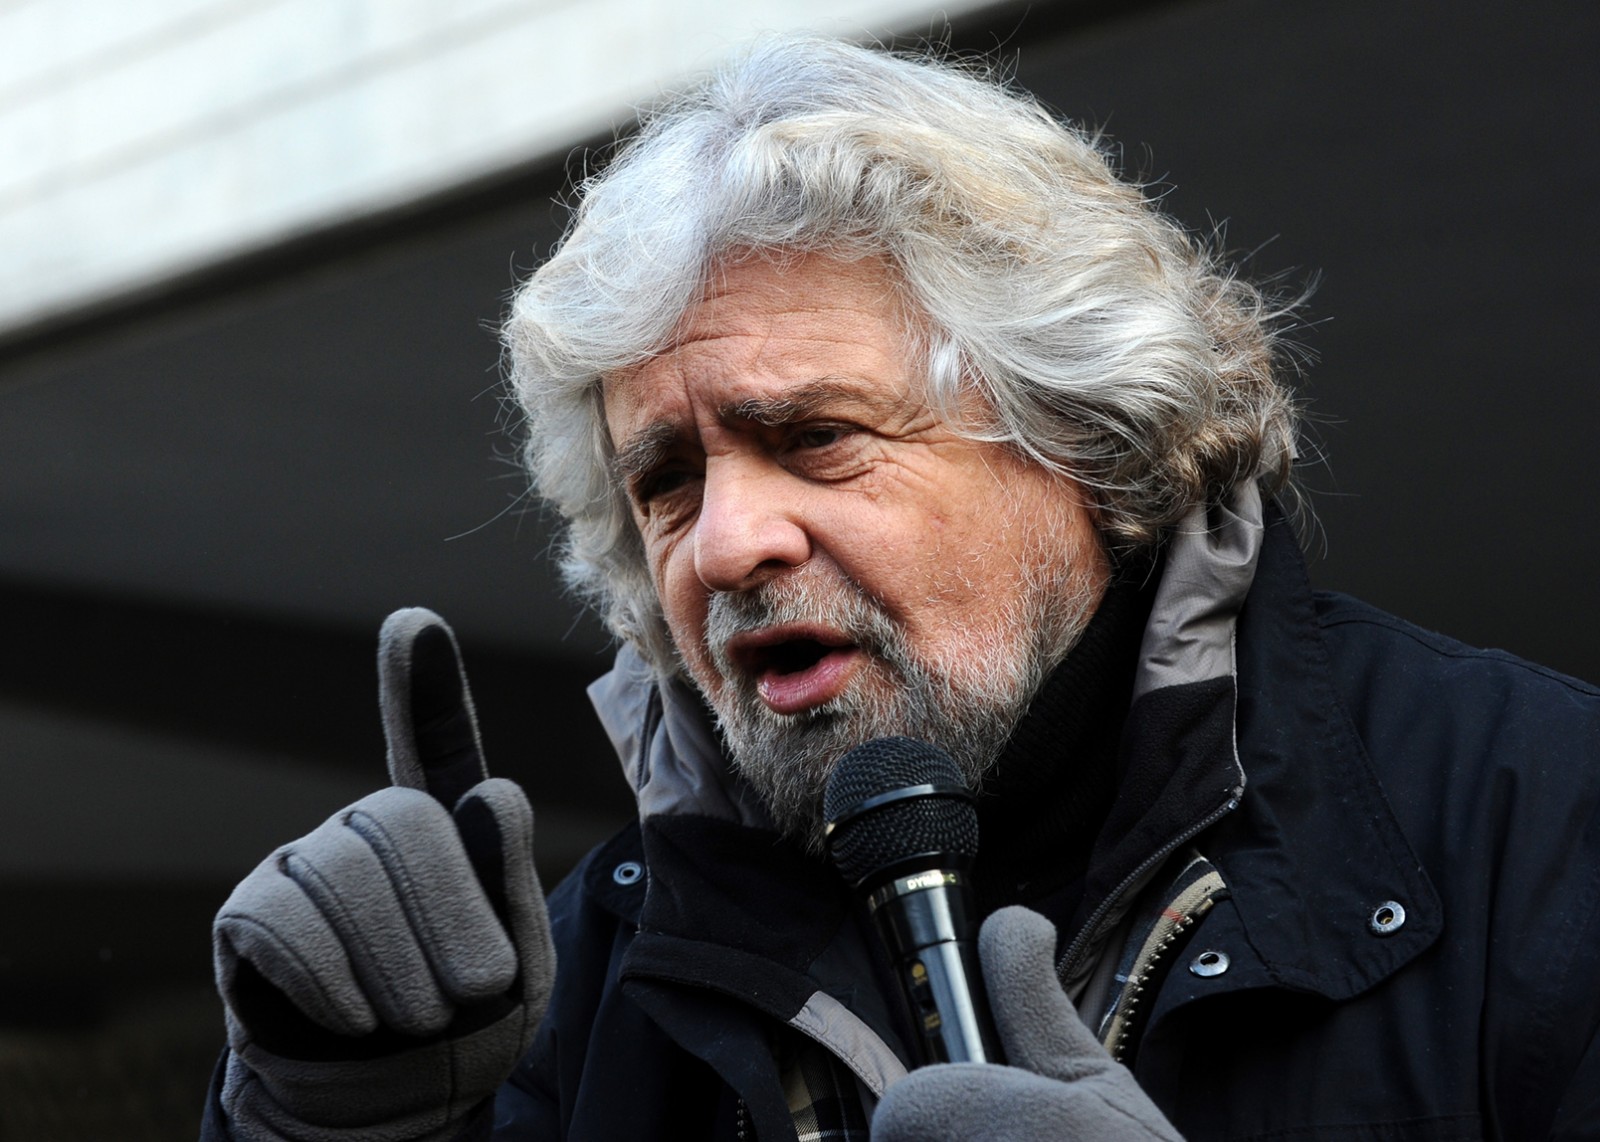 בפה גרילו, ראש מפלגת "חמשת הכוכבים". תומך במשאל עם ליציאת איטליה מגוש היורו (צילום: Niccolò Caranti \ מתוך wikimedia)